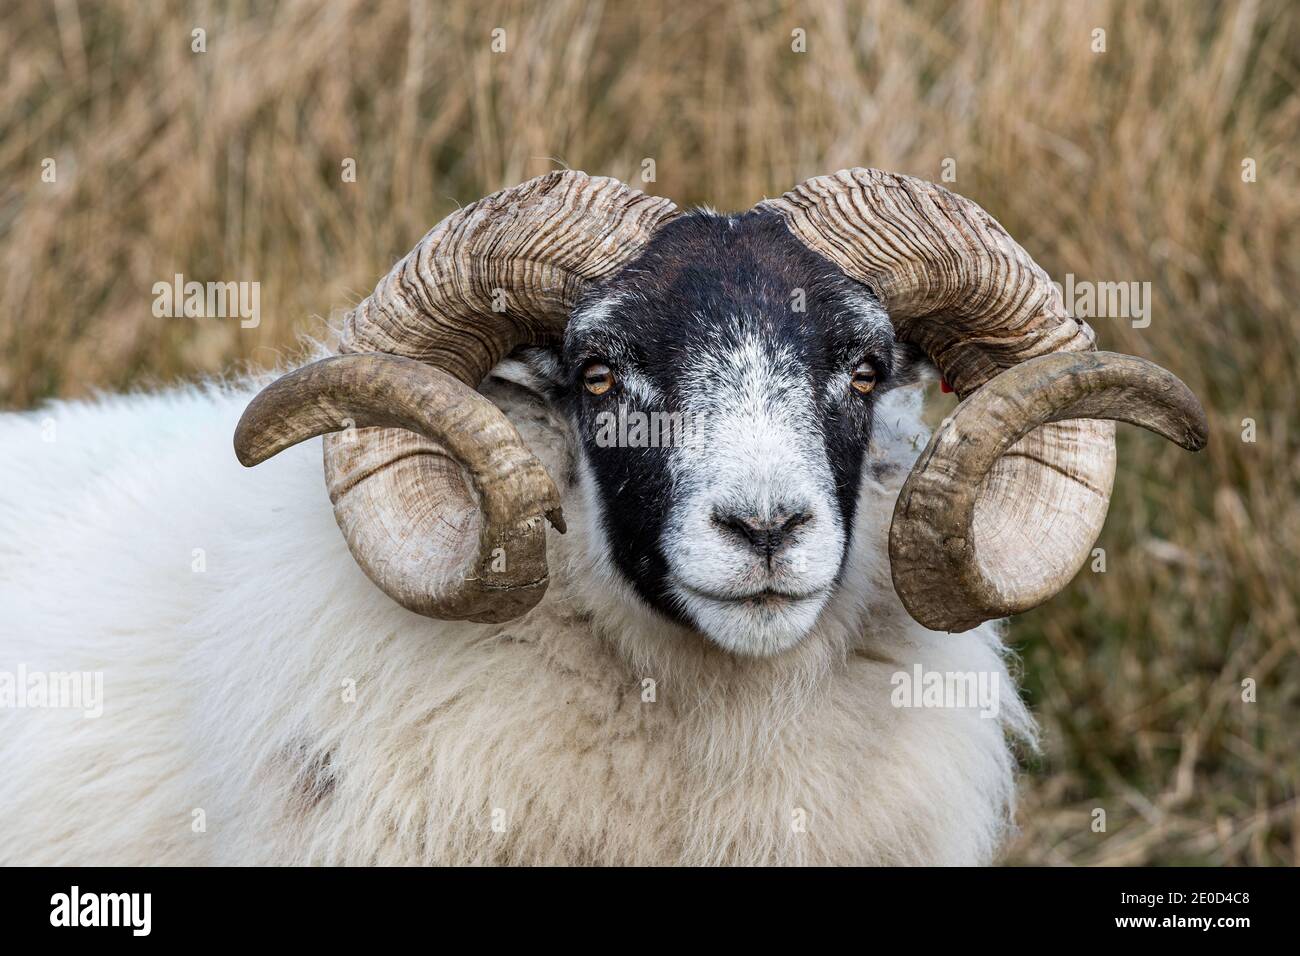 Gros plan d'un mouton écossais Blackface Ecosse Royaume-Uni Banque D'Images